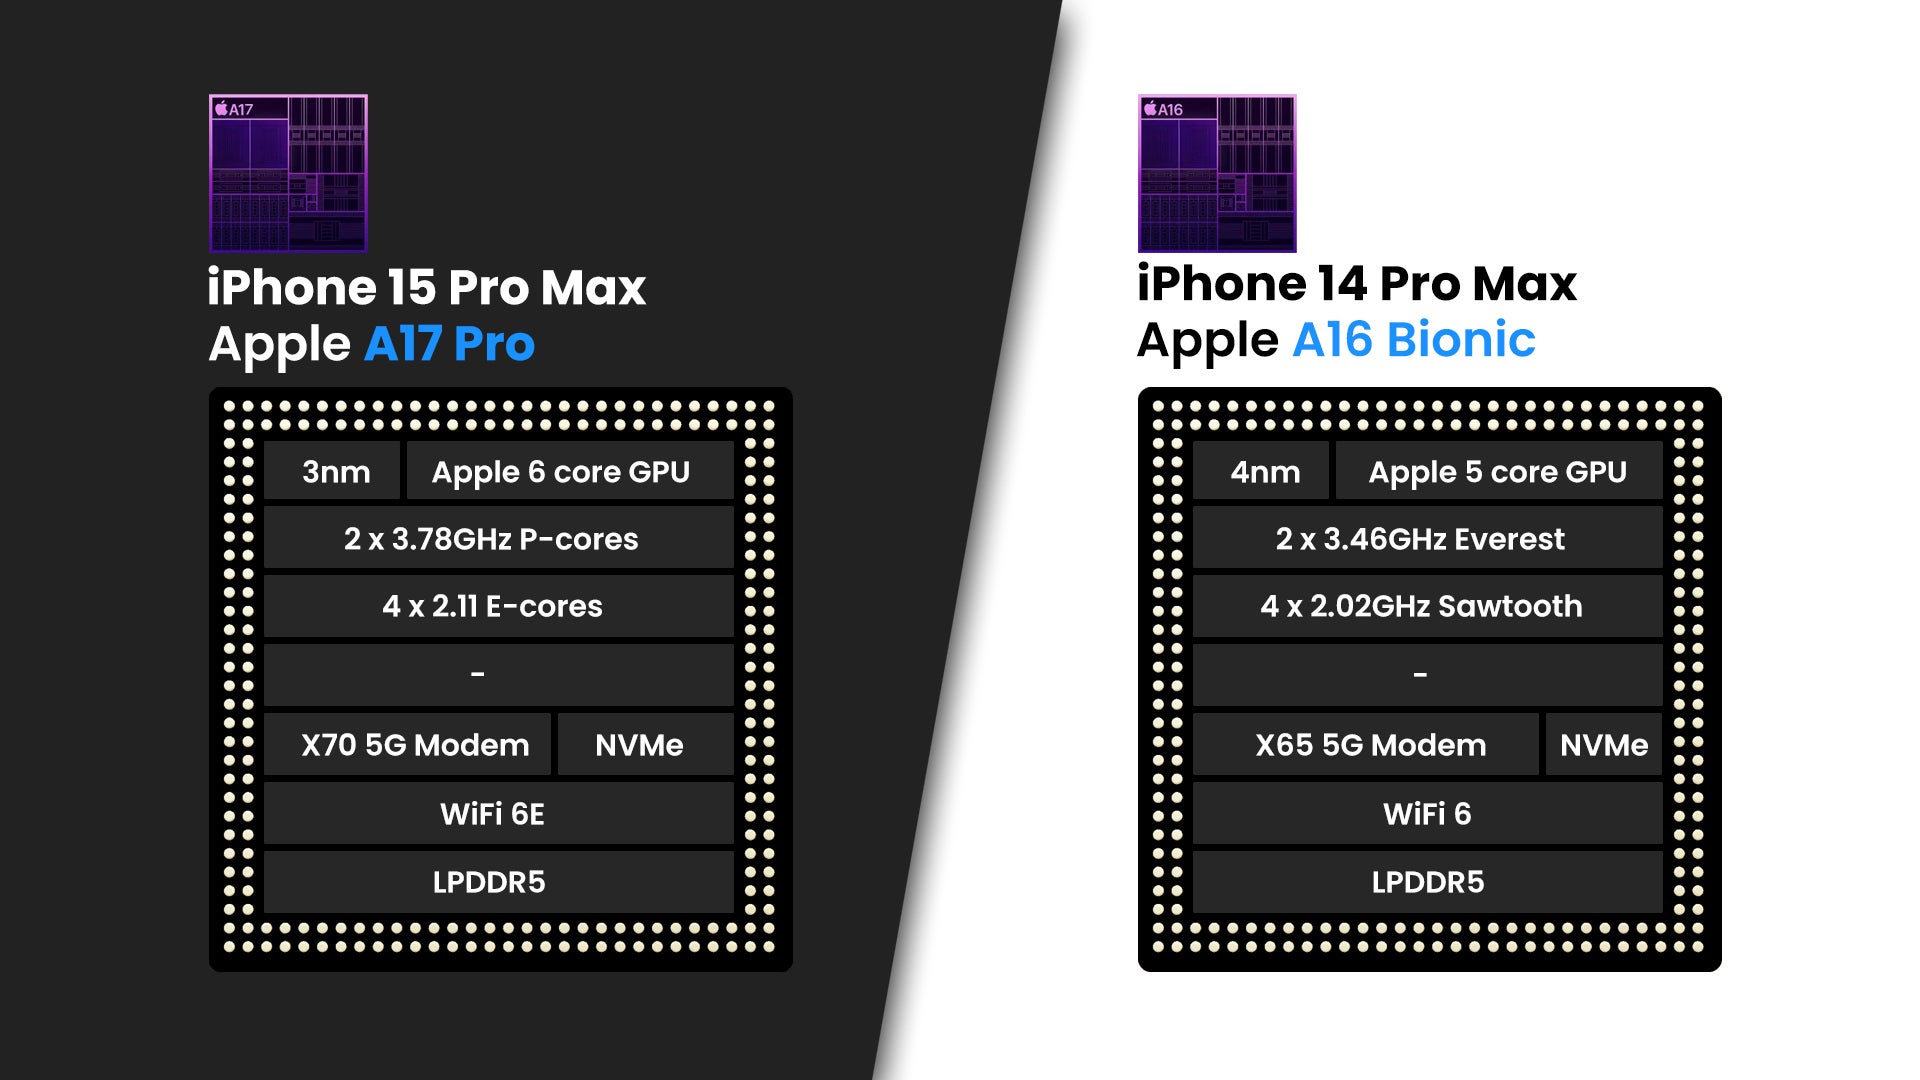 Les iPhone 15 Pro Max sont plus bruyants que les iPhone 14 Pro Max